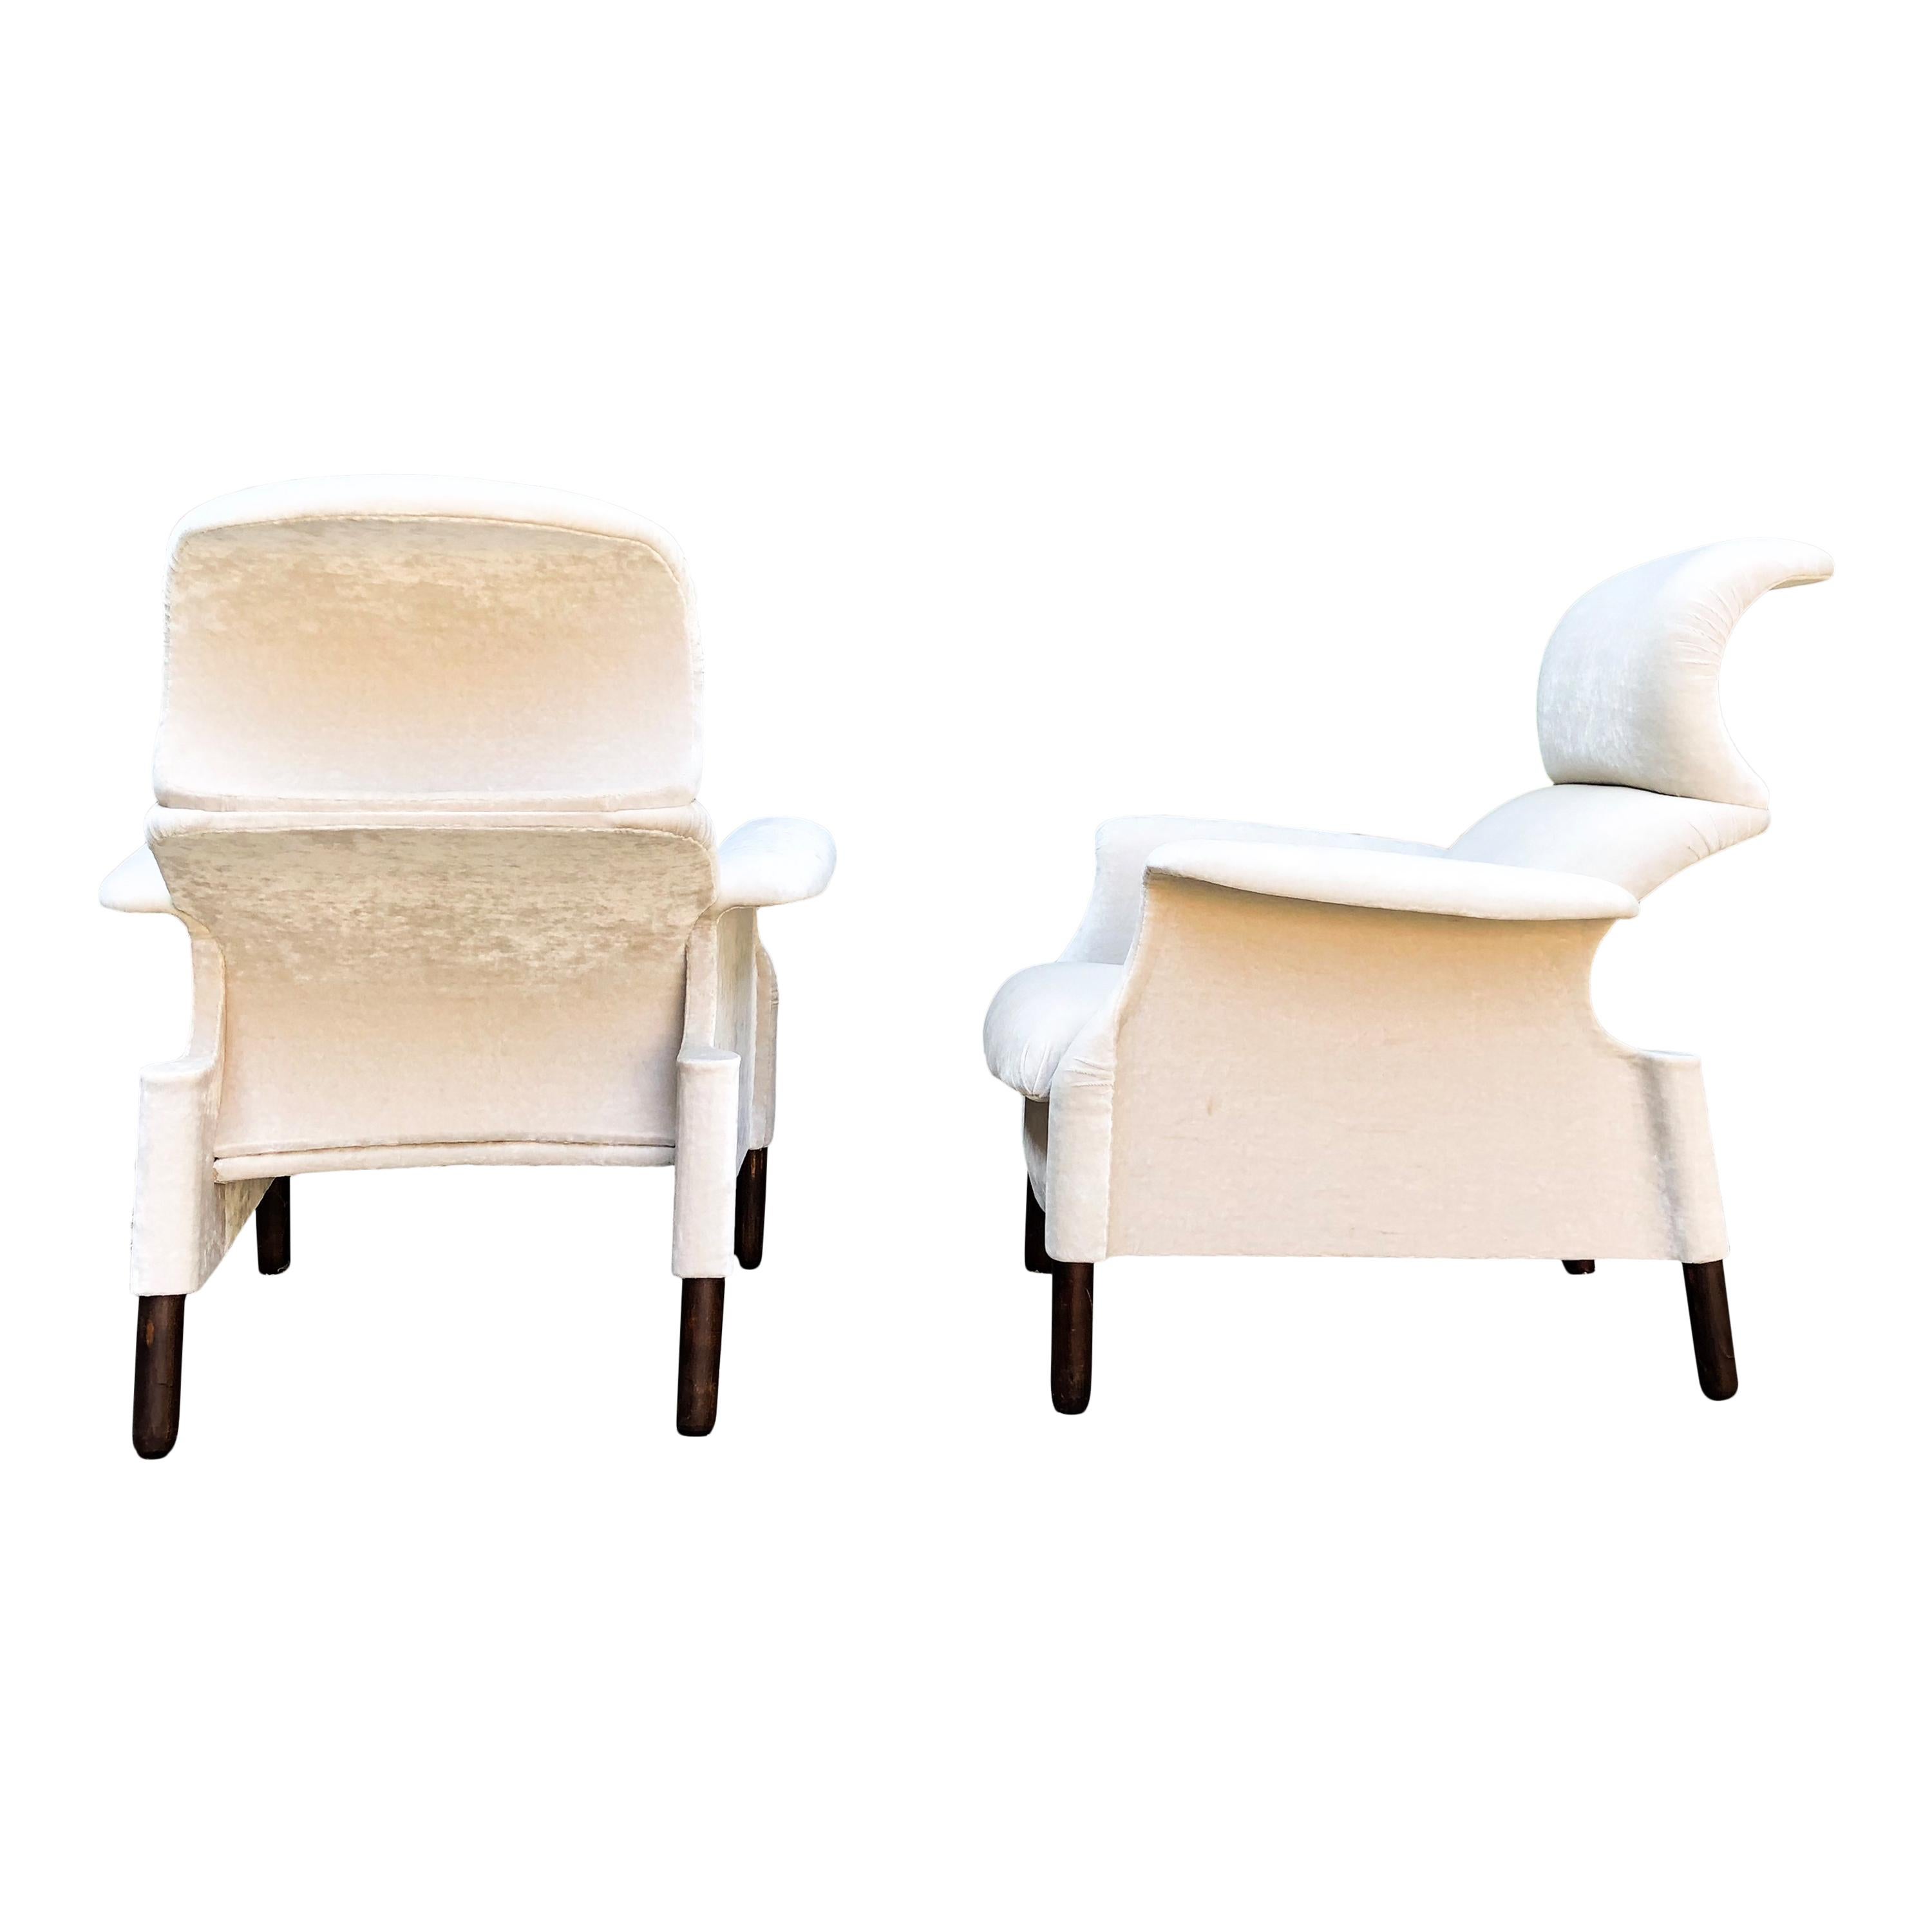 Ein Paar Sanluca-Sessel aus der ersten Produktion von Gavina SpA, mit dem originalen beigen Samtbezug. Jeder Sessel besteht aus einzelnen gebogenen Holzteilen, die mit Schrauben verbunden sind. Sanluca ist das erste Ergebnis der engen Zusammenarbeit